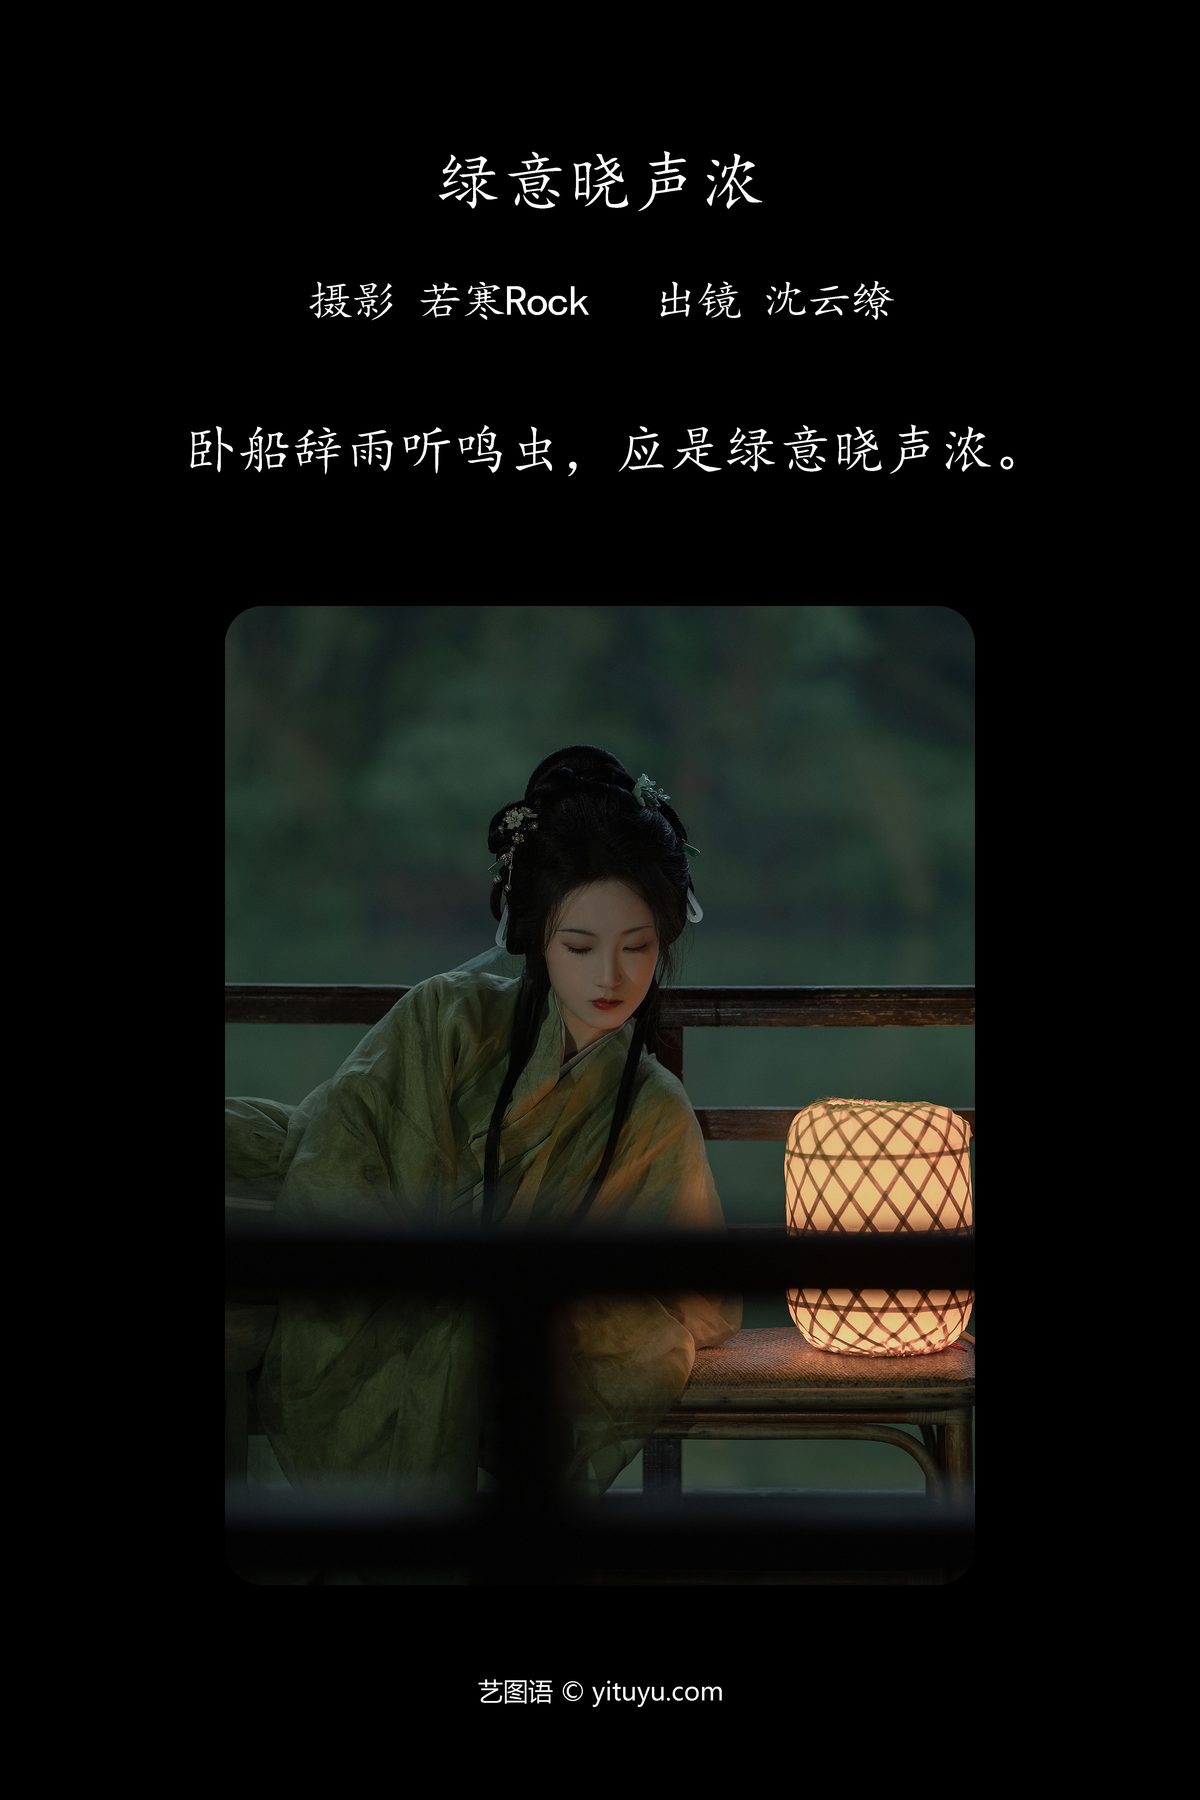 YiTuYu艺图语 Vol 4651 Shen Yun Liao 0001 1042445562.jpg